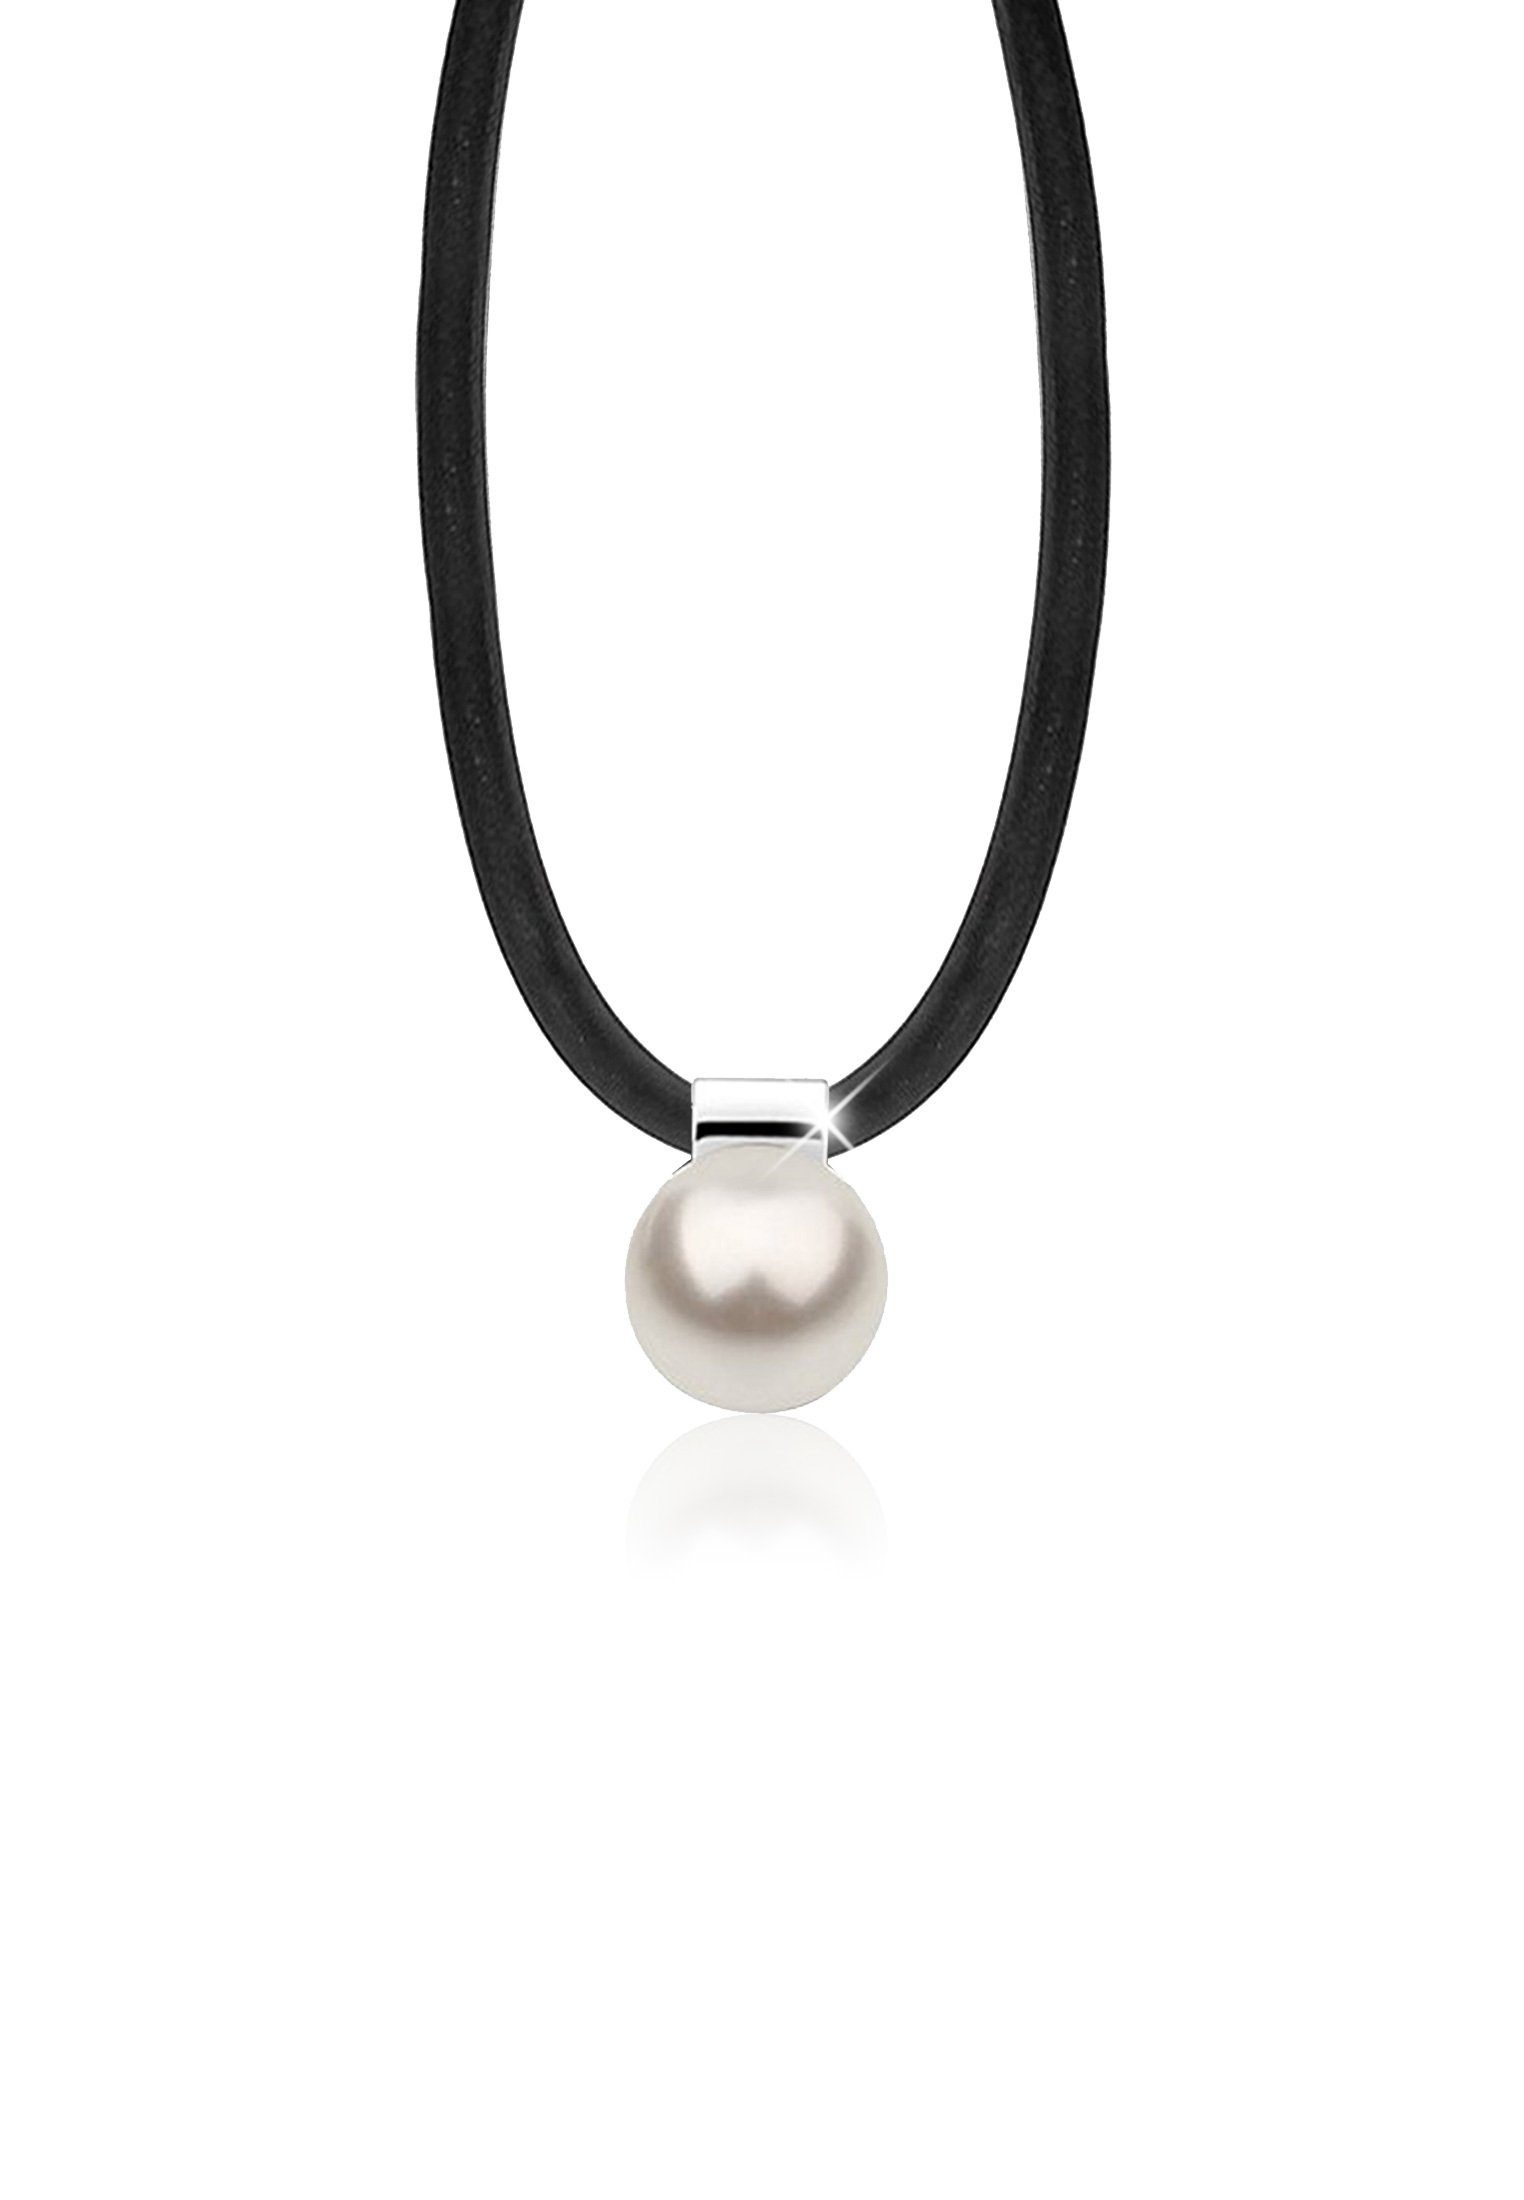 【Öffnung】 Nenalina Perlenkette Kautschuk Perle Silber 925 Weiß Synthetische